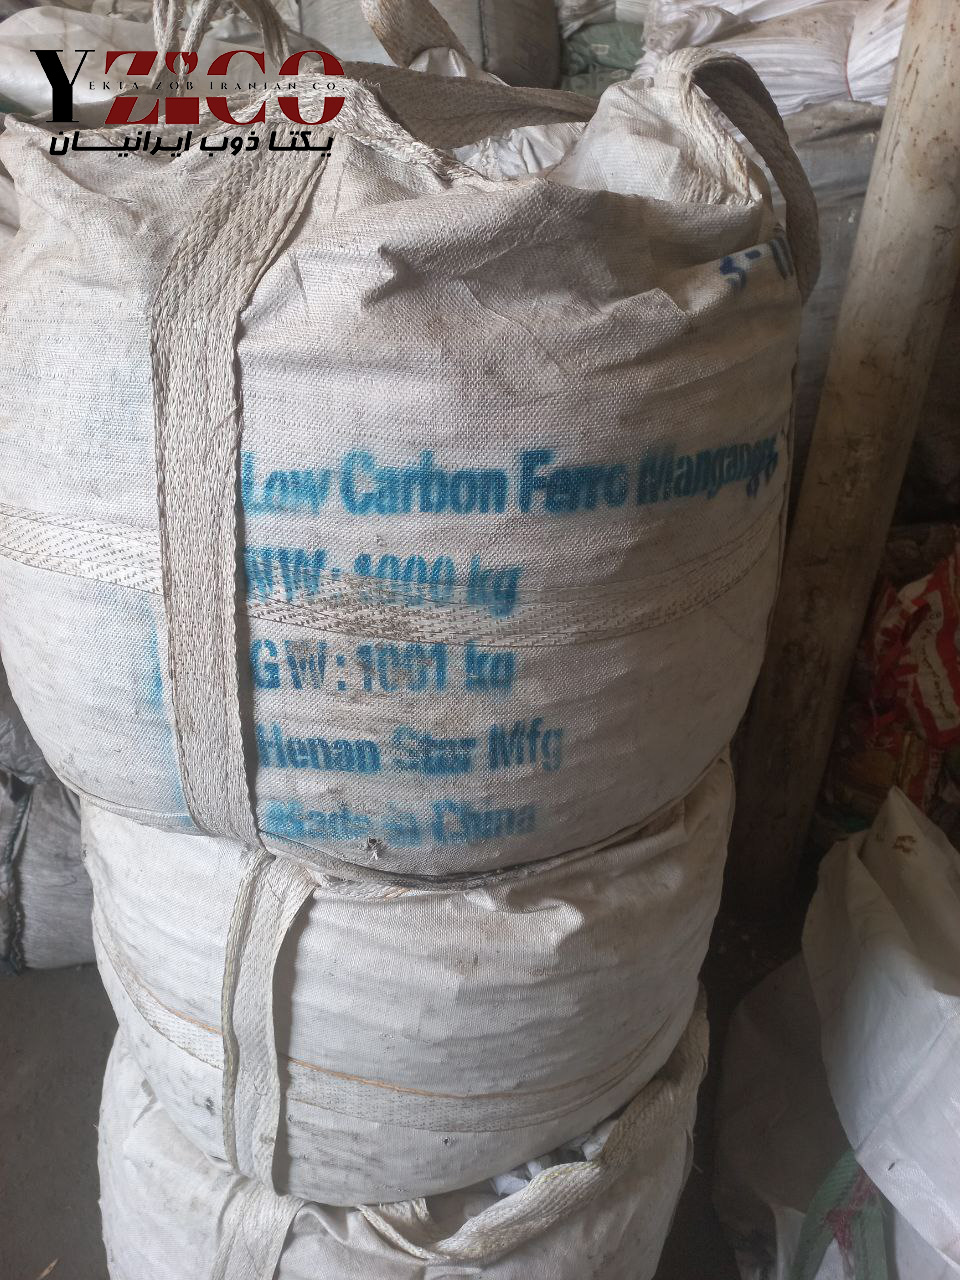 low carbon ferro mangenese 2.jpg